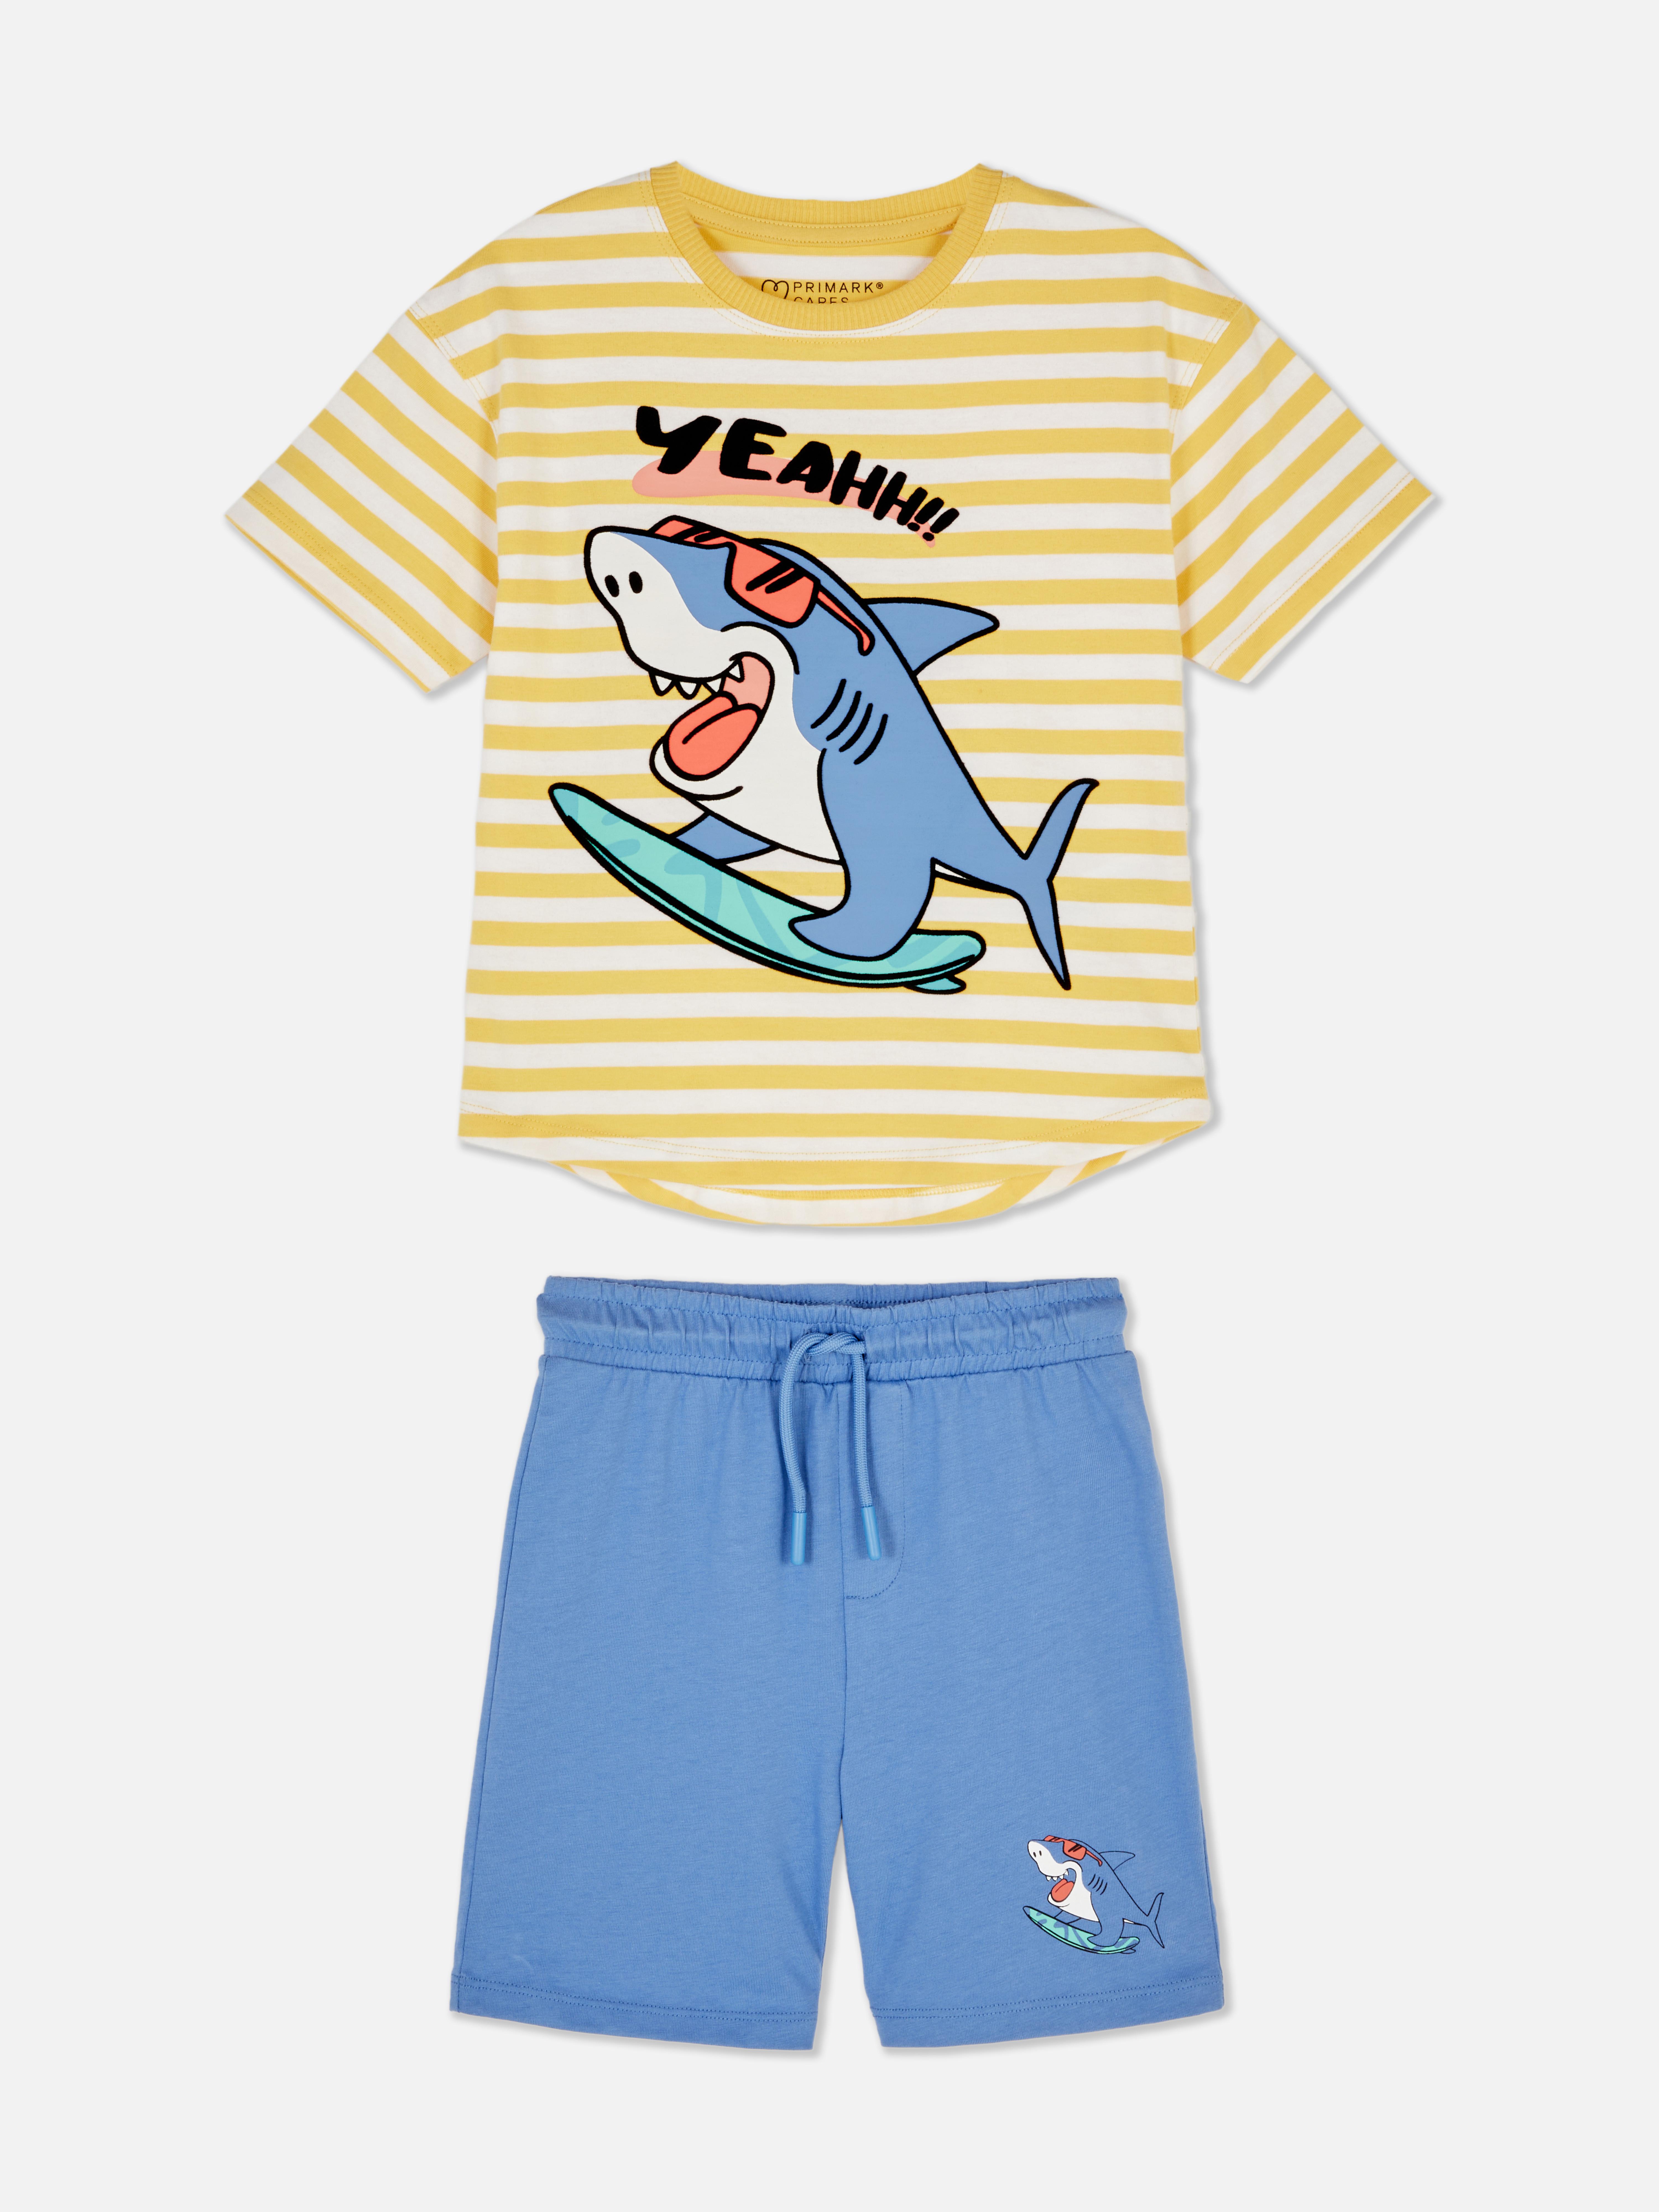 Matchende set met T-shirt en korte broek met haaien